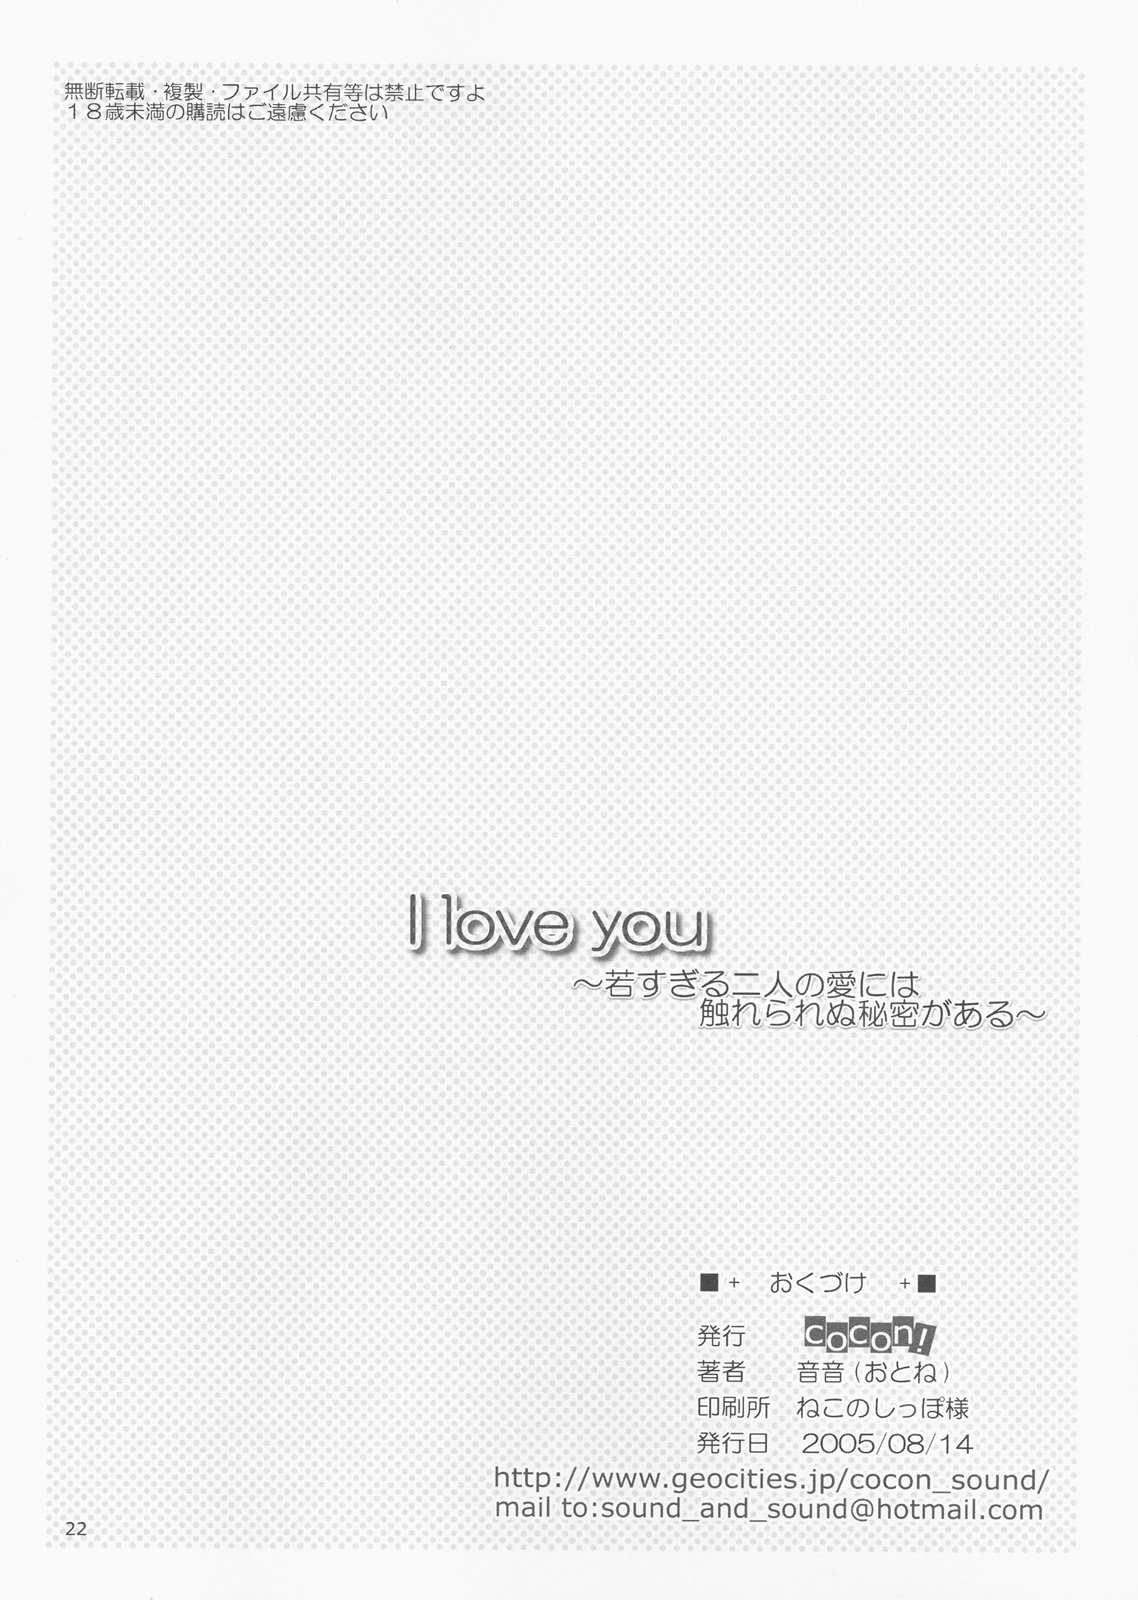 [cocon! (otone)] I love you (ToHeart2) (同人誌) [cocon! (音音)] I love you (ToHeart2)